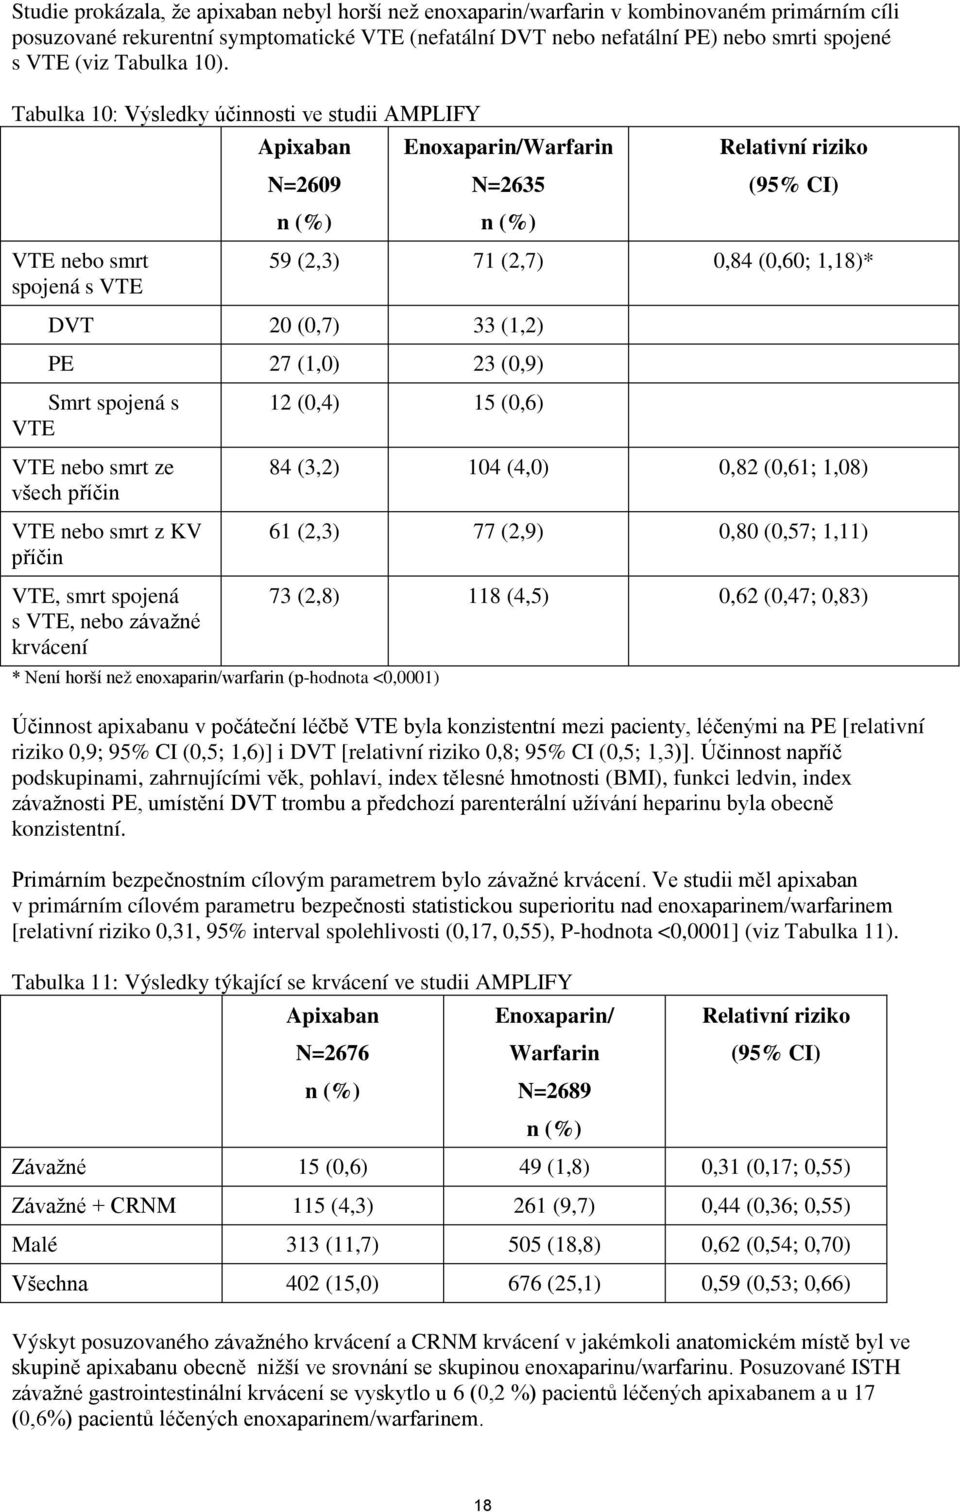 Tabulka 10: Výsledky účinnosti ve studii AMPLIFY VTE nebo smrt spojená s VTE Apixaban N=2609 n (%) Enoxaparin/Warfarin N=2635 n (%) Relativní riziko (95% CI) 59 (2,3) 71 (2,7) 0,84 (0,60; 1,18)* DVT